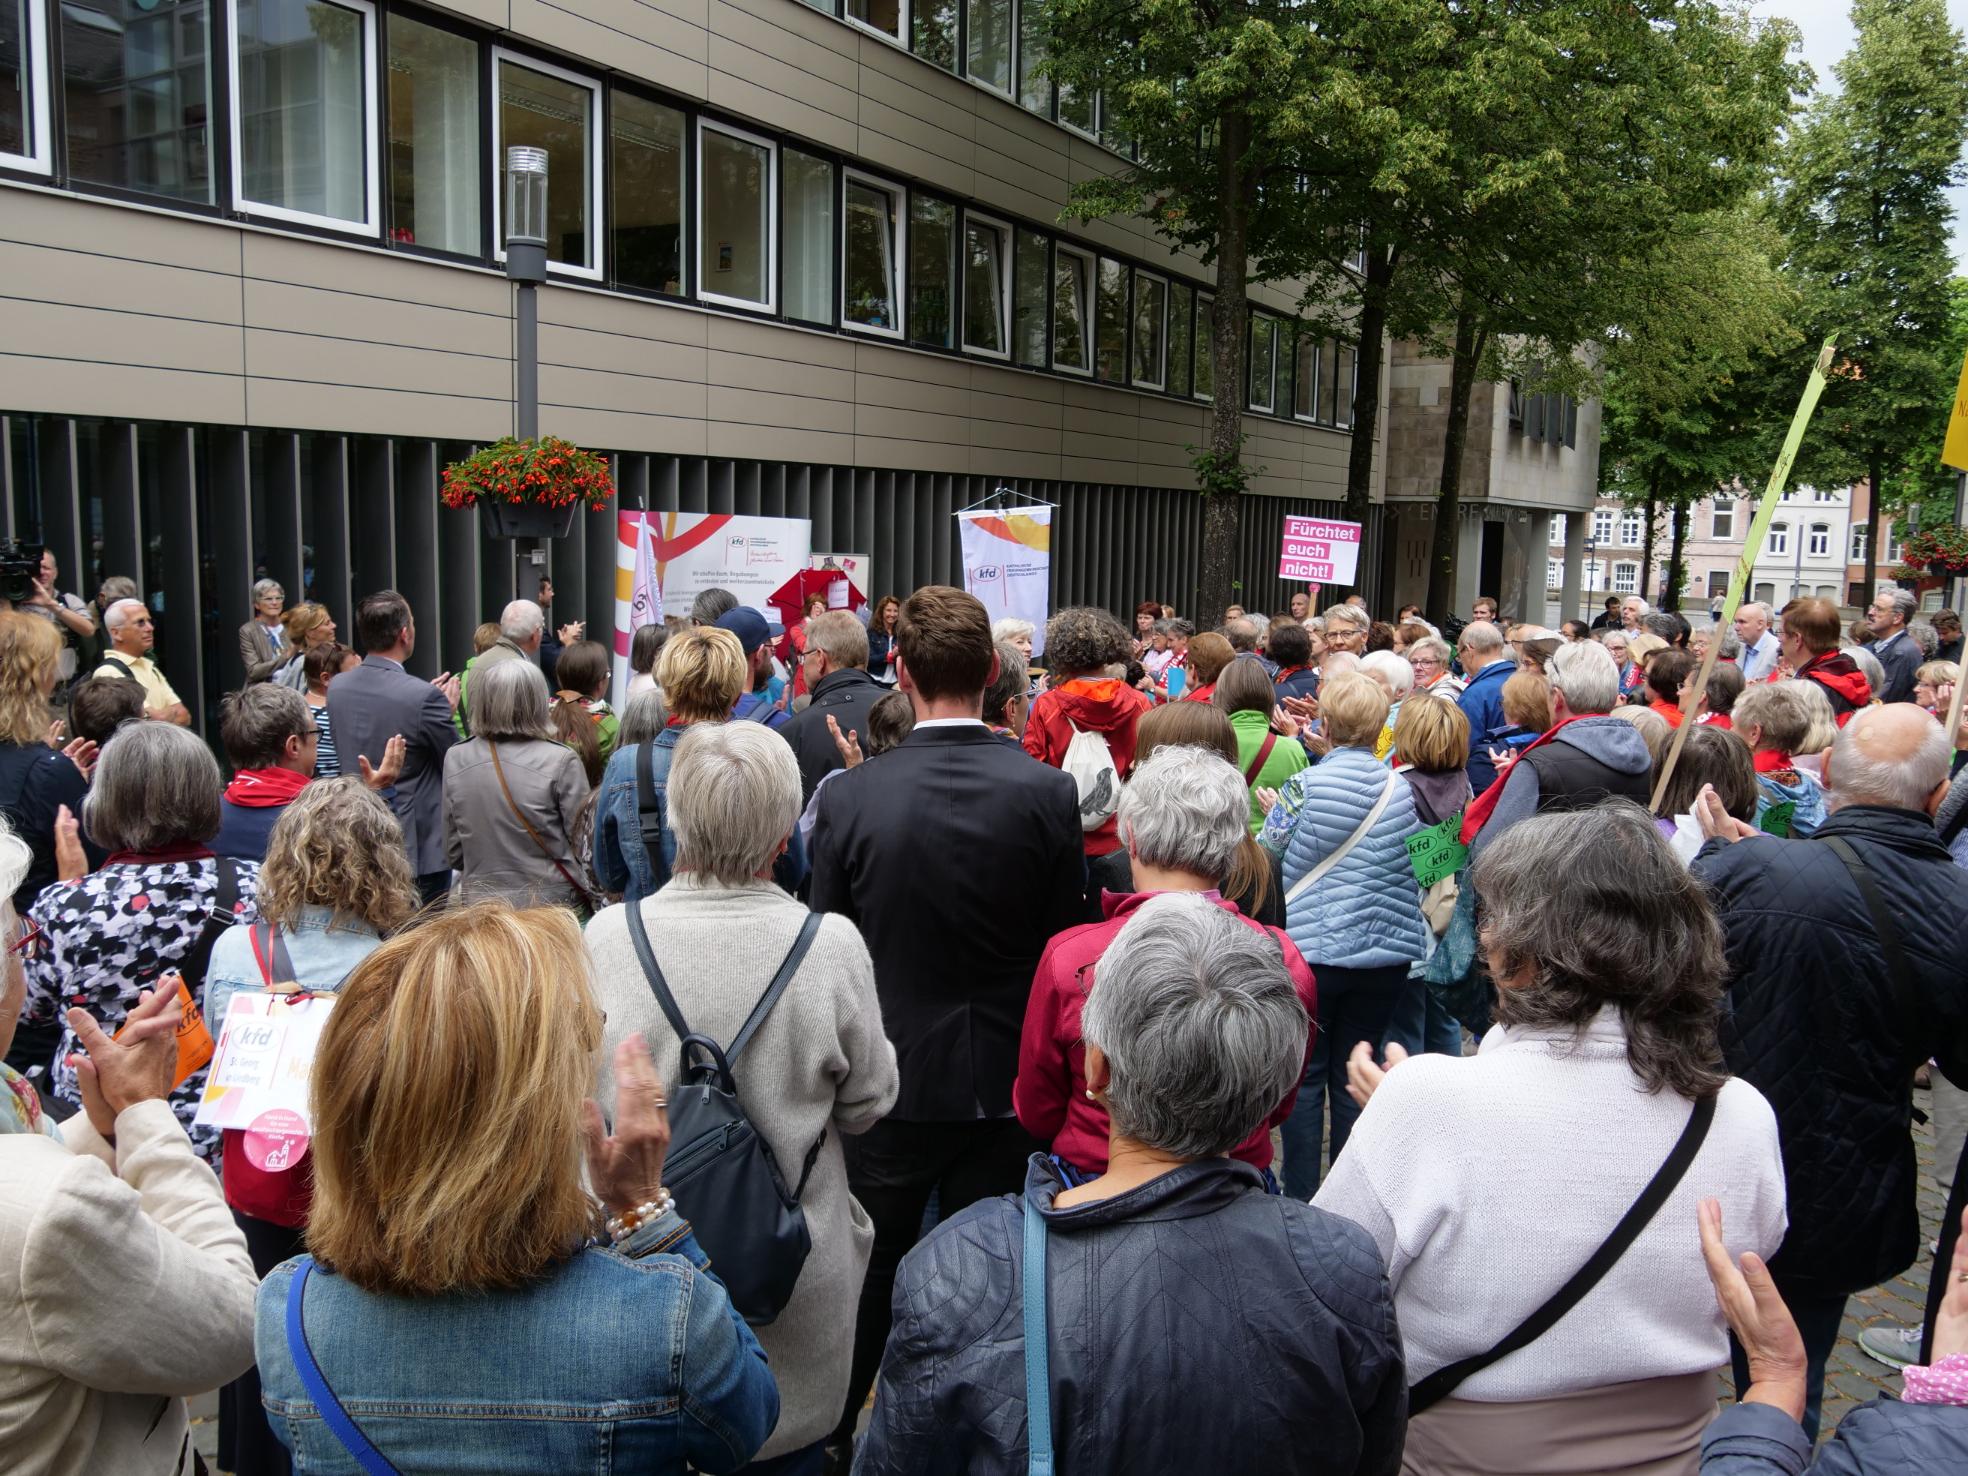 Archivfoto: Maria 2.0 in Aachen, 8. Juli 2019. In diesem Jahr hat die Veranstaltung gemäß der Corona-Richtlinien stattgefunden. (c) Bistum Aachen